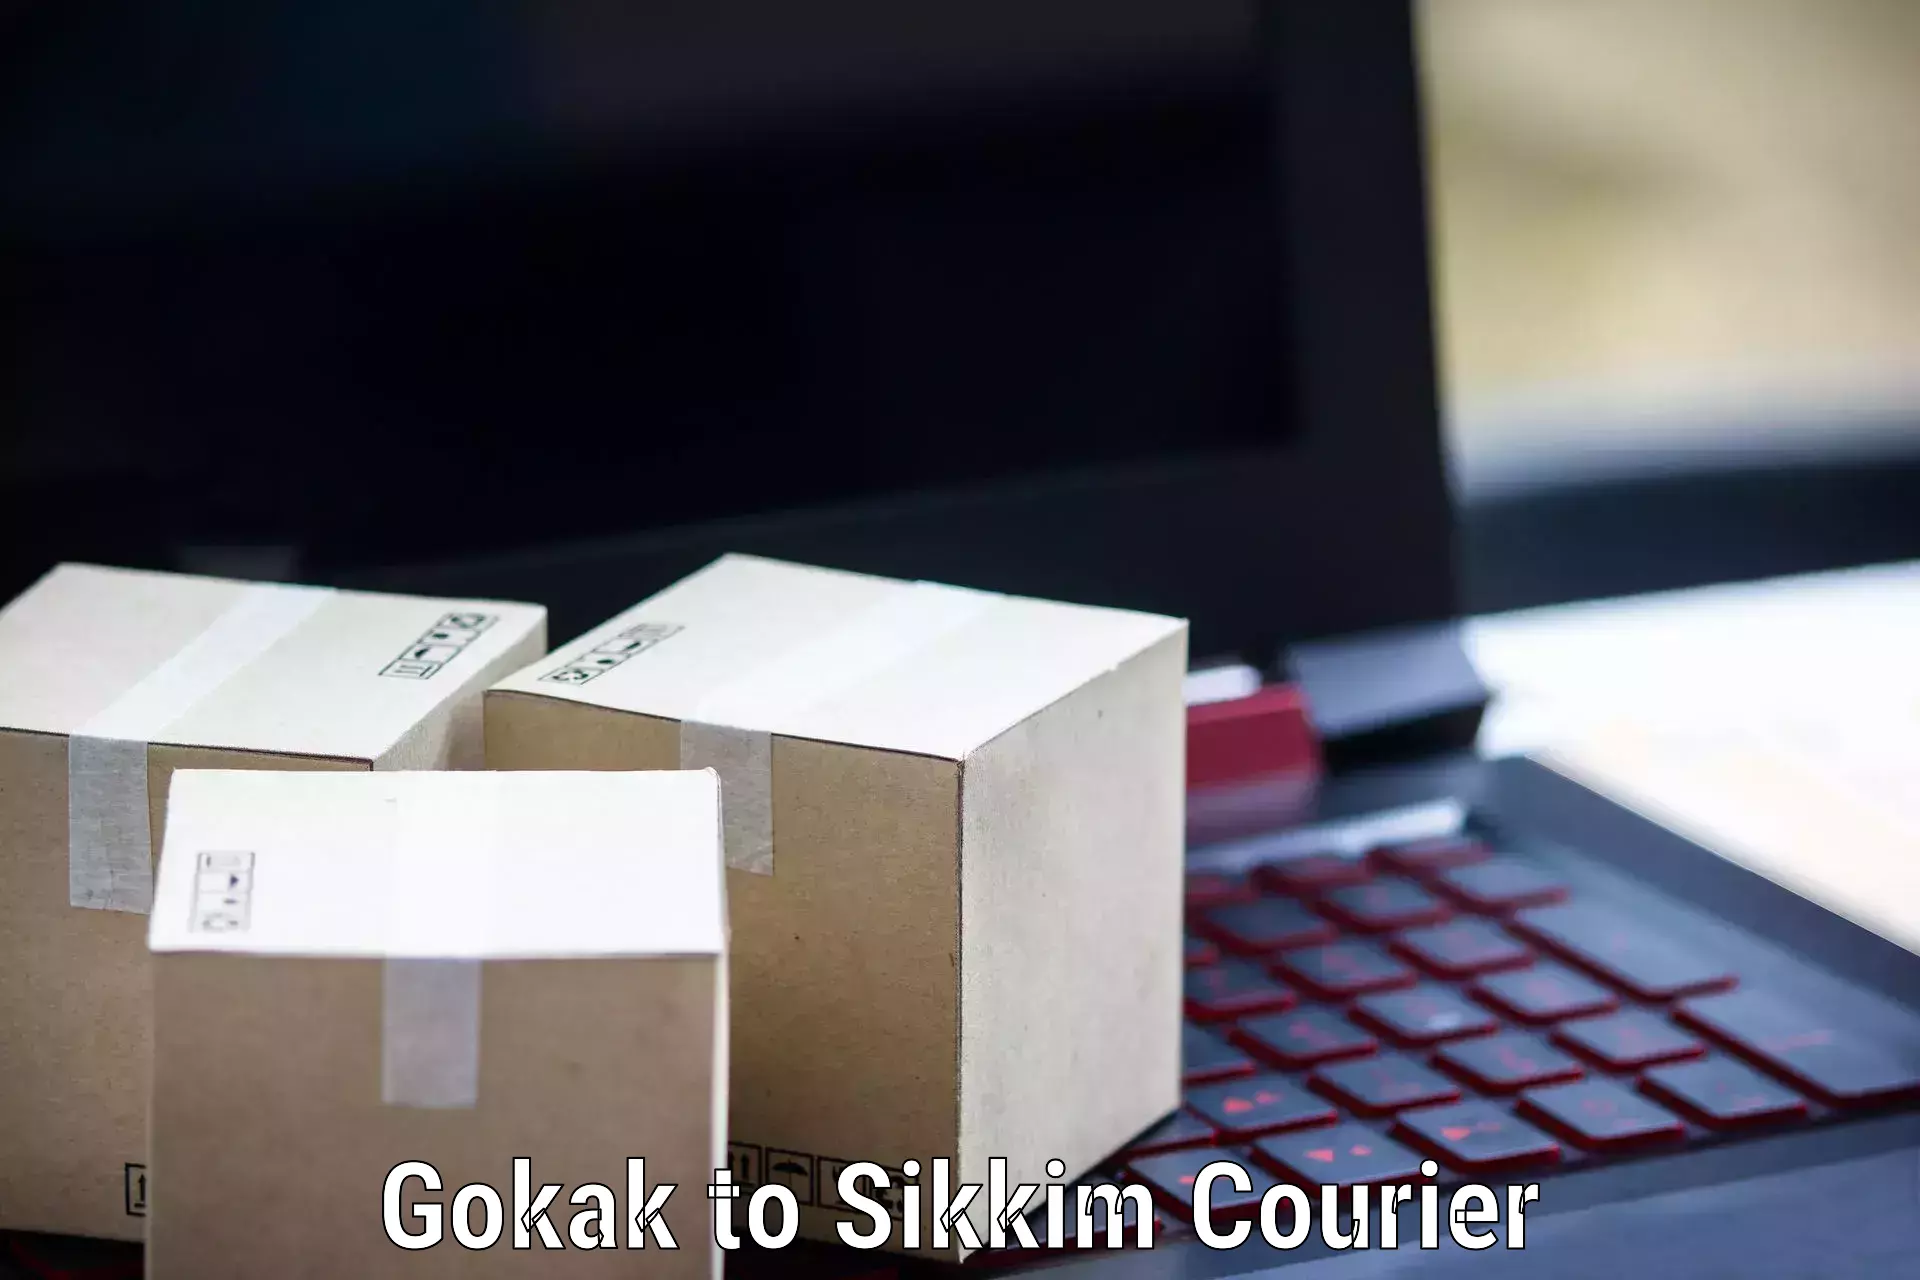 Doorstep parcel pickup in Gokak to East Sikkim